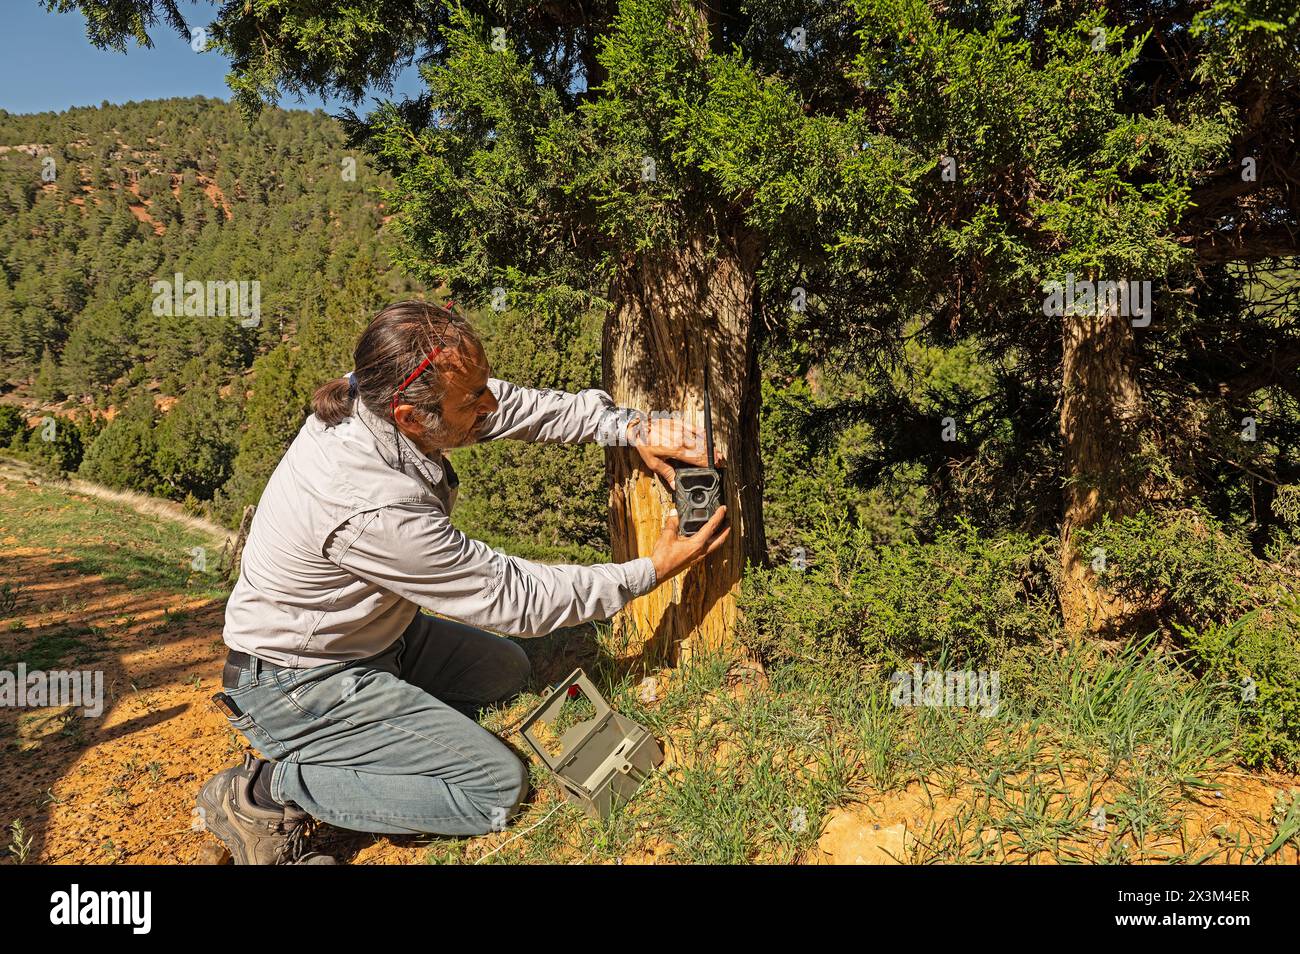 Un homme qui a placé un piège photo dans un arbre pour filmer des animaux sauvages. Banque D'Images